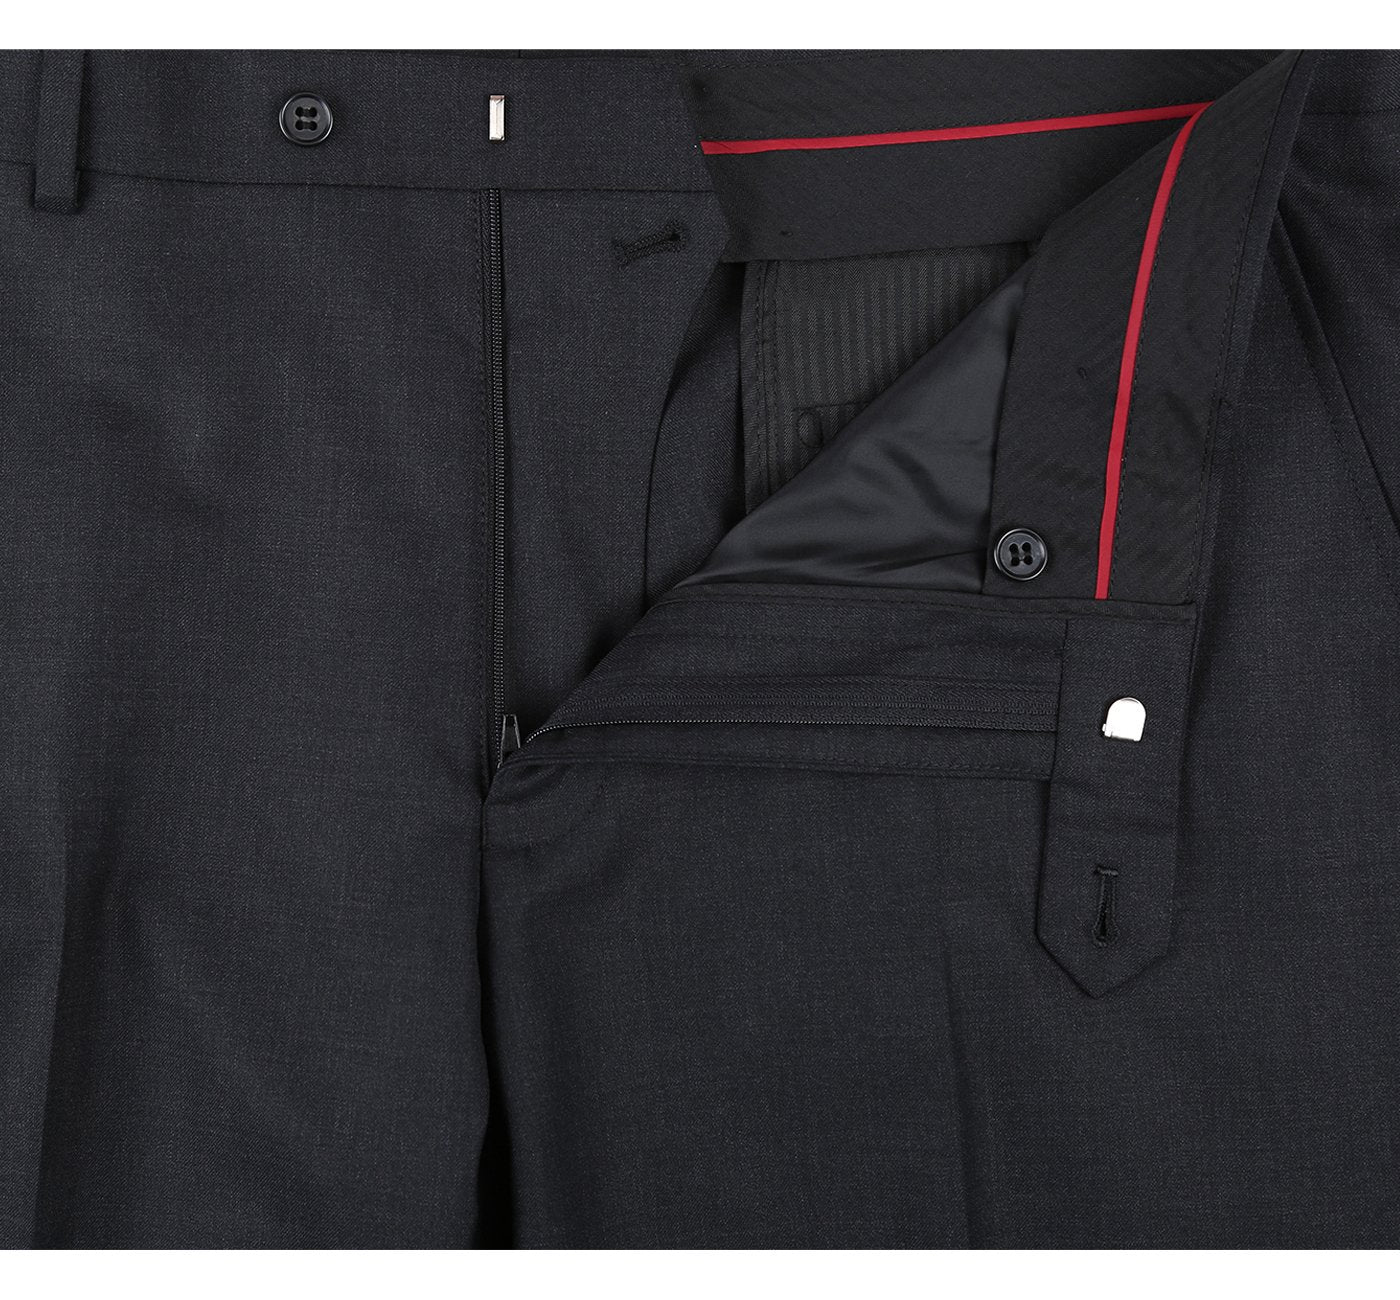 Men’s 2-Button Notch Lapel Classic Fit Wool Suit 6